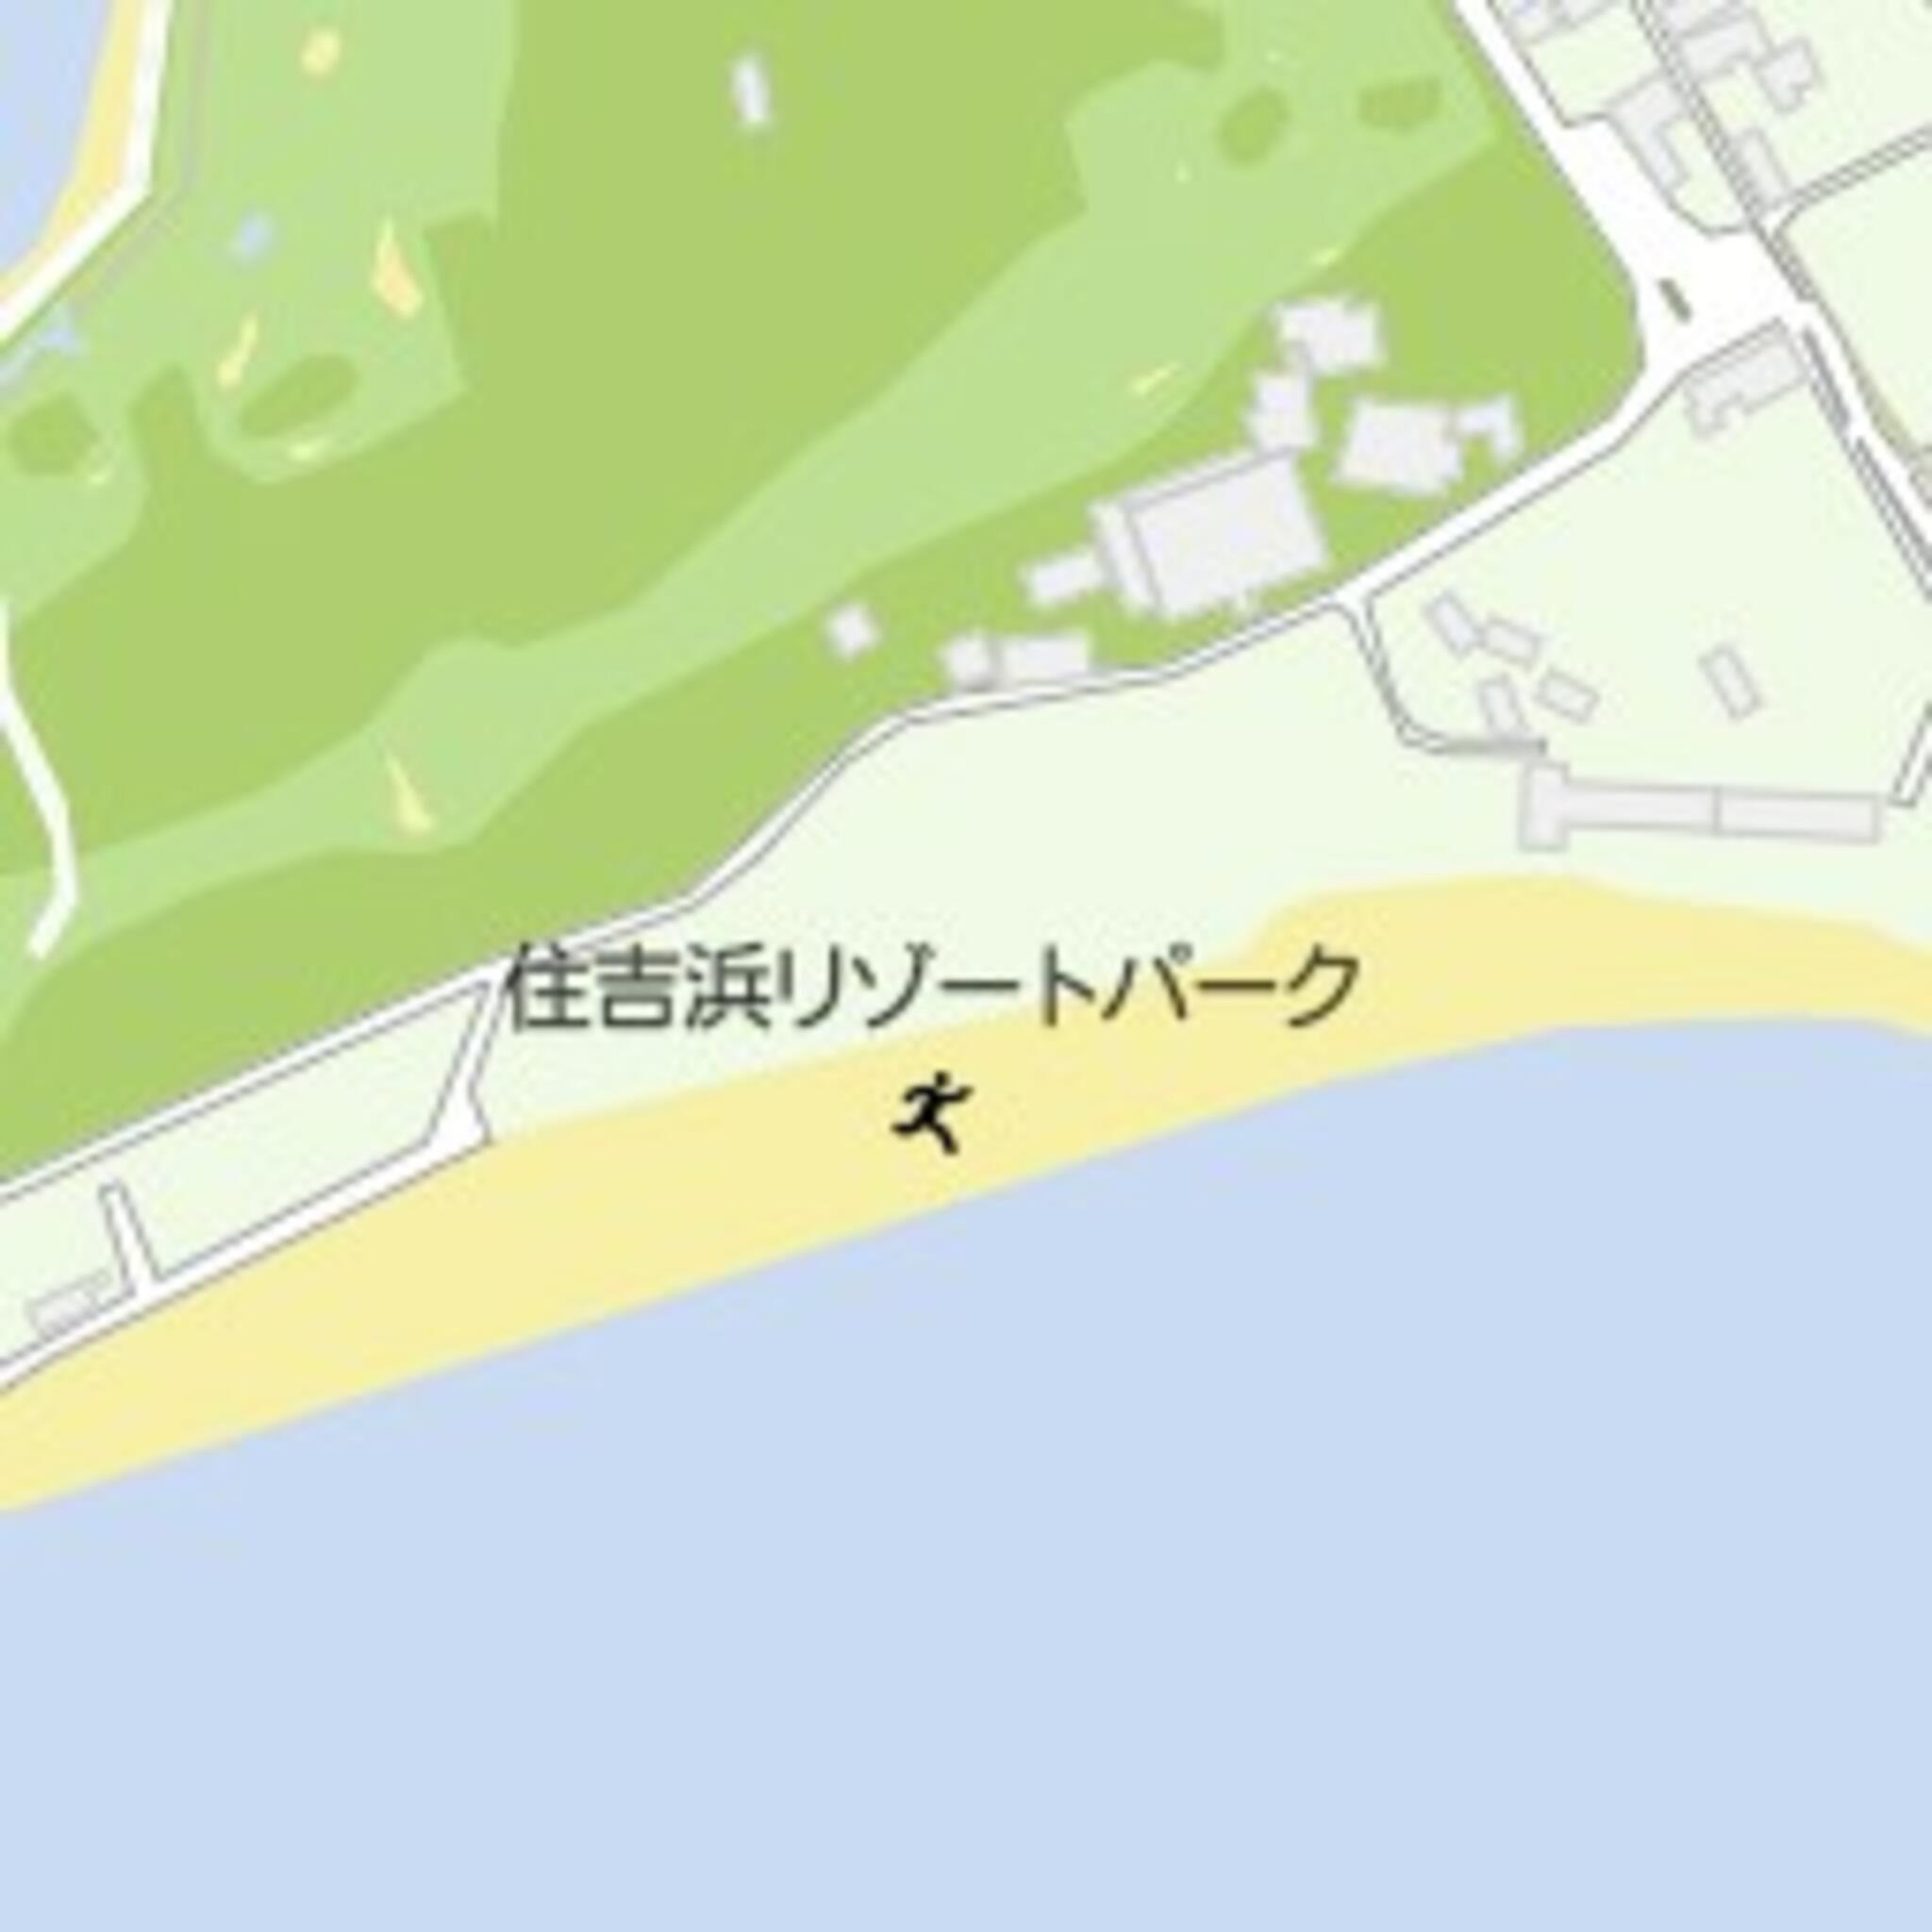 クチコミ : 住吉浜リゾートパーク - 杵築市大字守江/海水浴場 | Yahoo